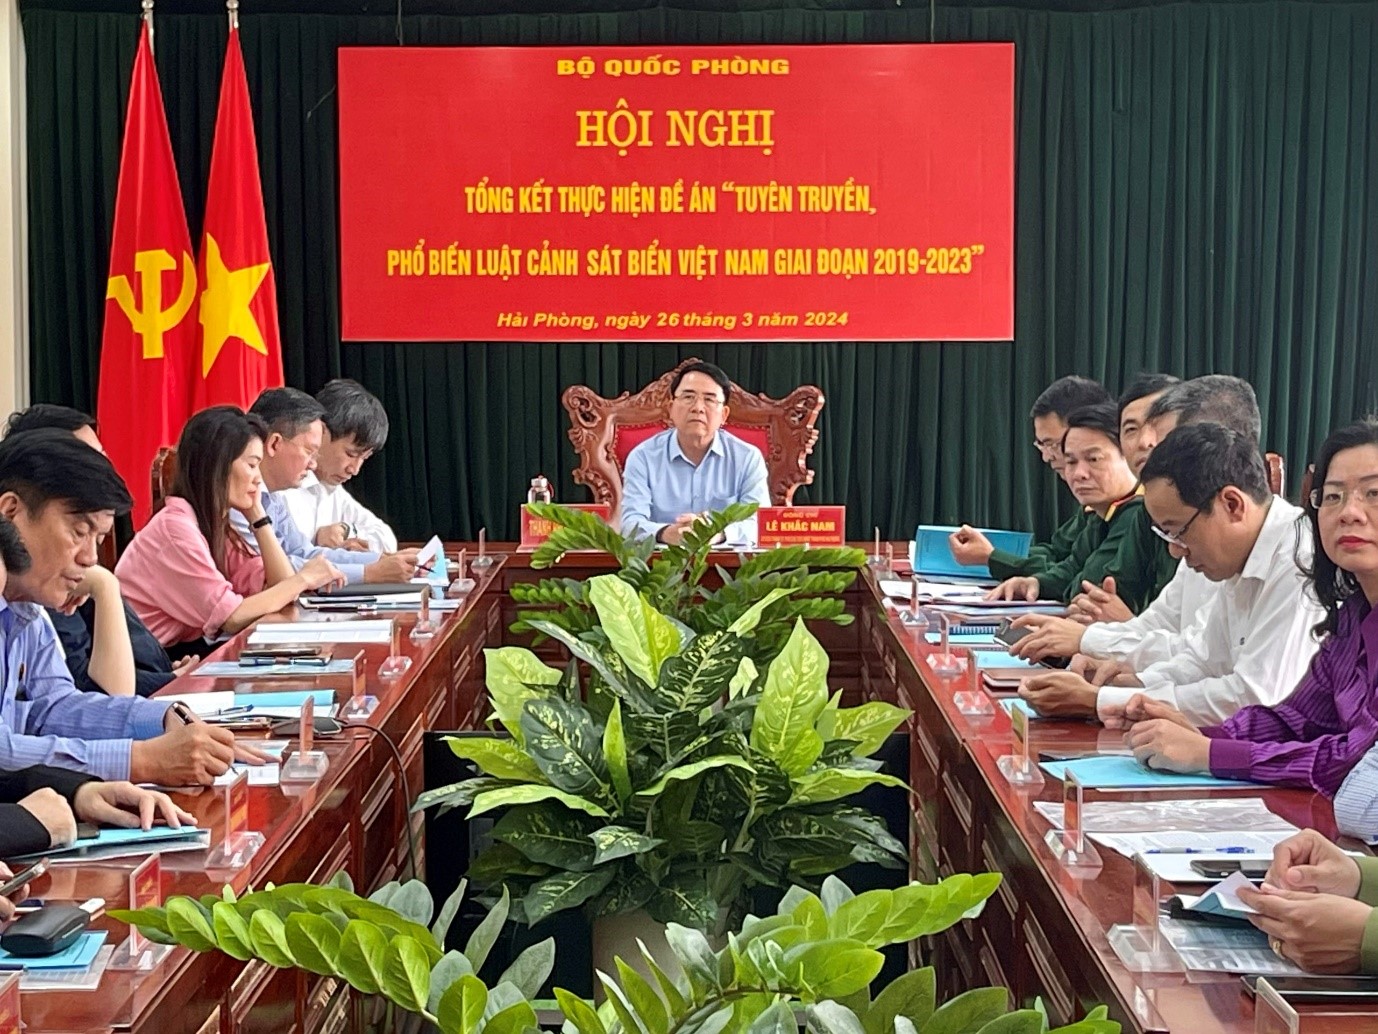 Hội nghị trực tuyến tổng kết Đề án Tuyên truyền, phổ biến Luật Cảnh sát biển Việt Nam giai đoạn 2019-2023